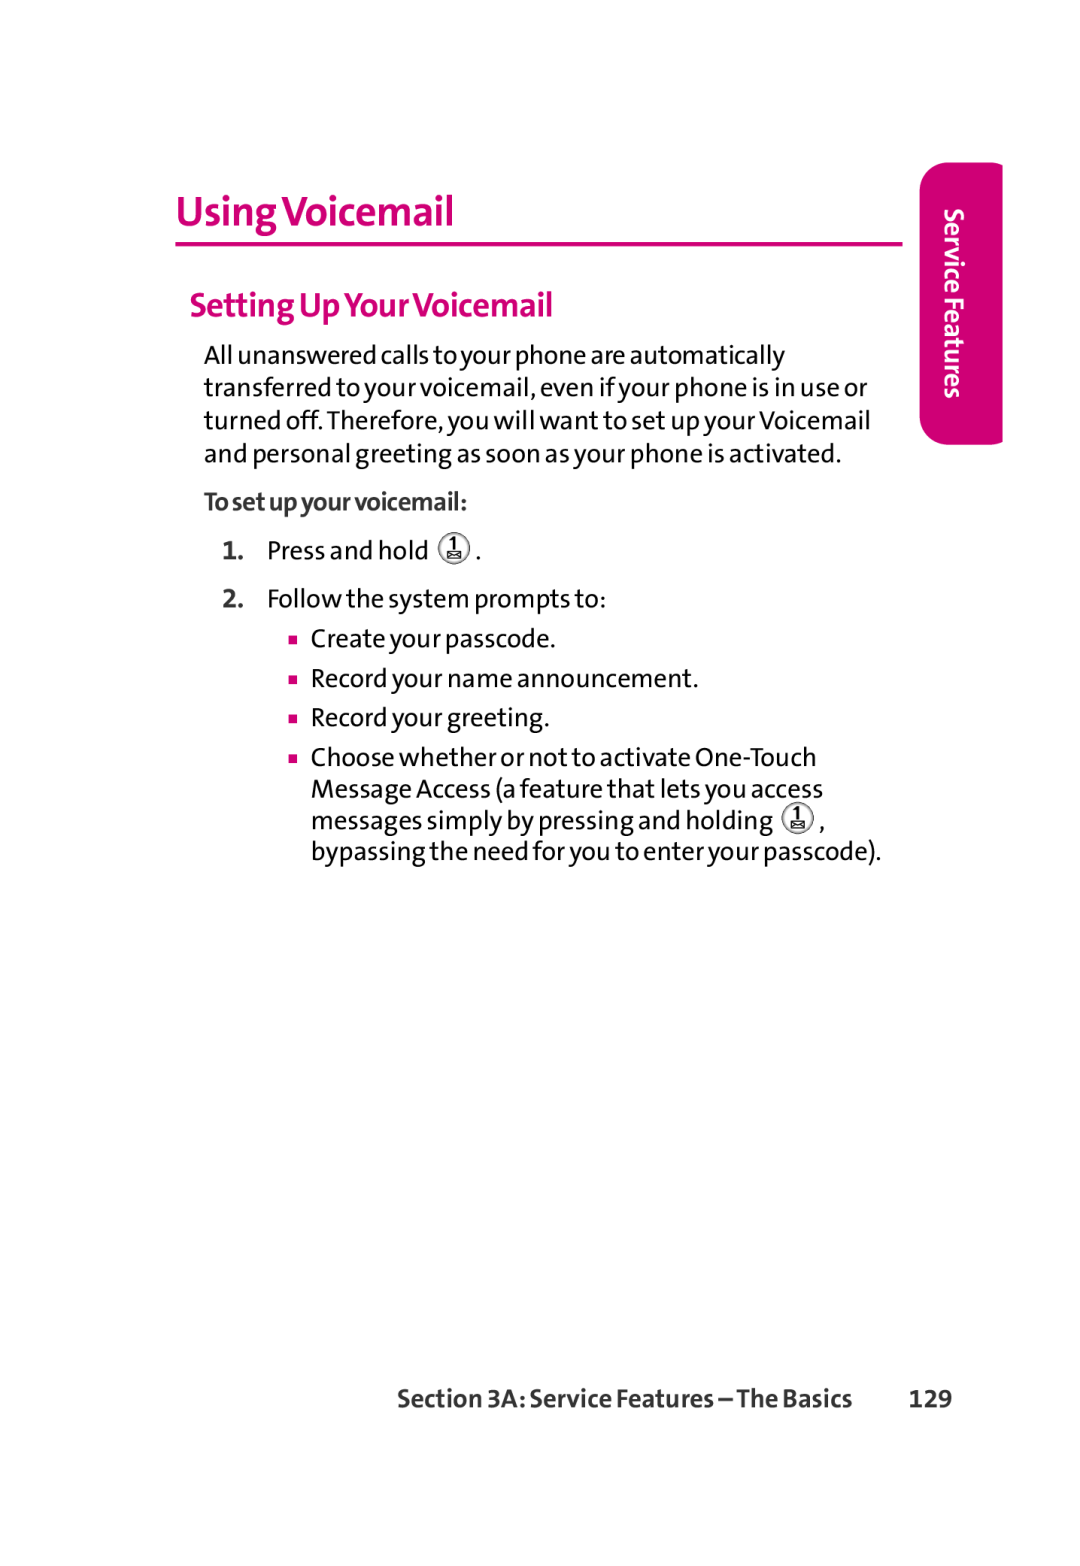 LG Electronics 350 manual UsingVoicemail, Setting UpYourVoicemail, Service Features, Tosetupyourvoicemail 